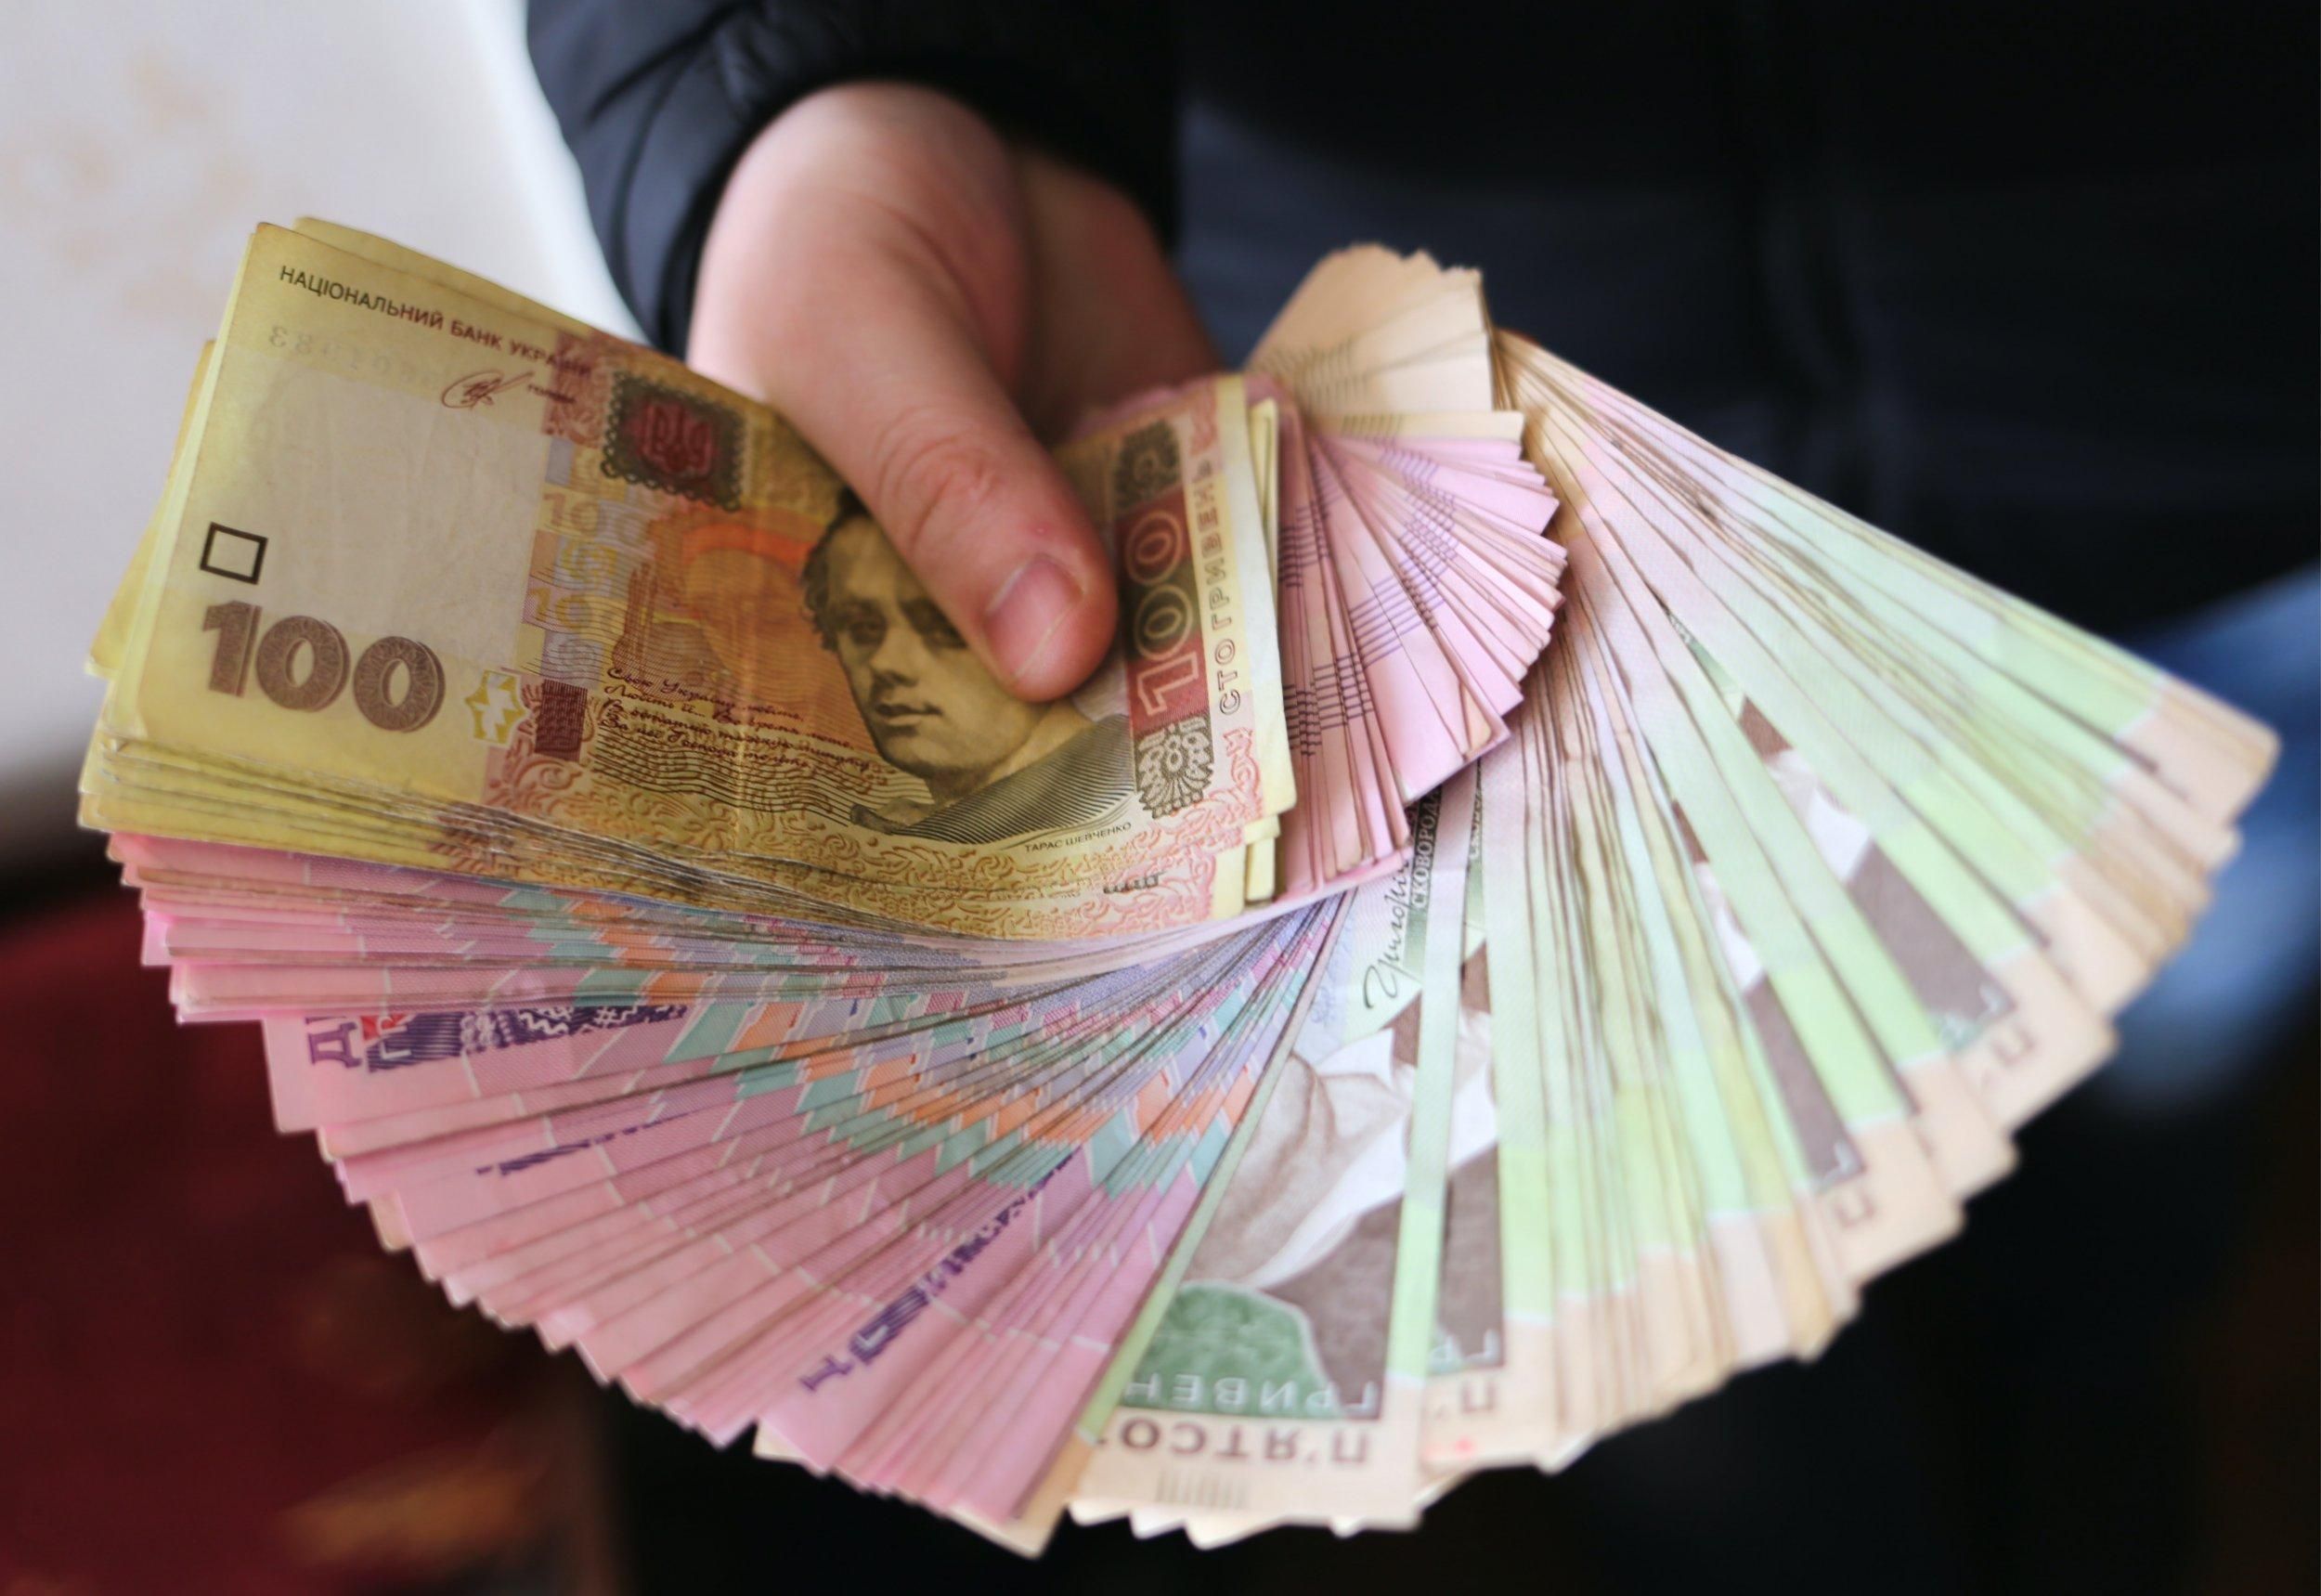 Сколько денег ФЛП хранят на счетах: данные Опендатабот - Экономические новости Украины - Экономика